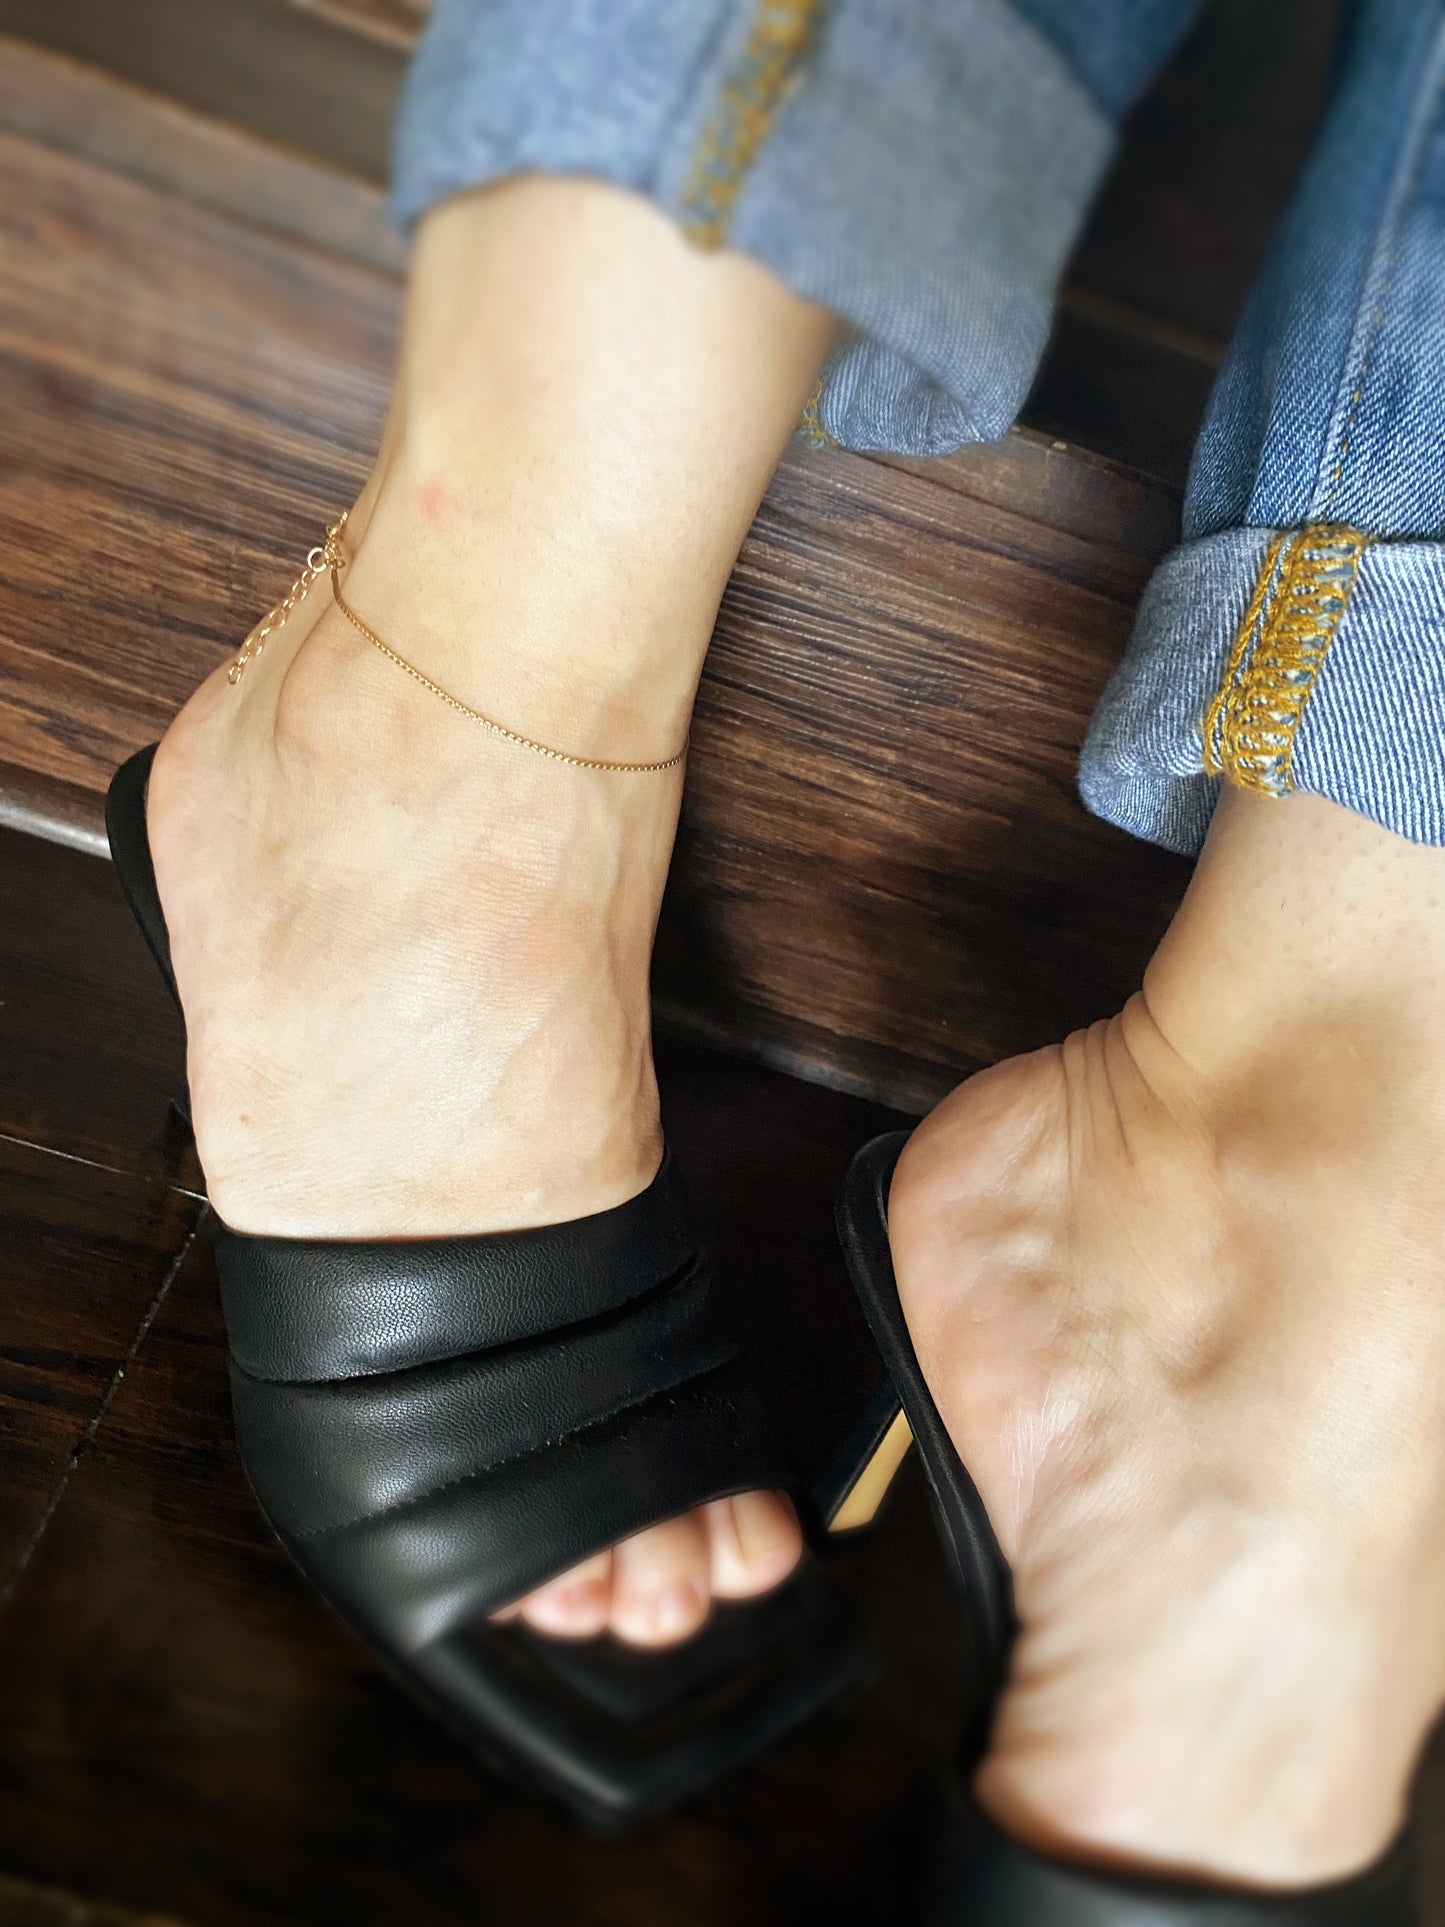 GoldFi 18k Gold Filled Delicate Anklet